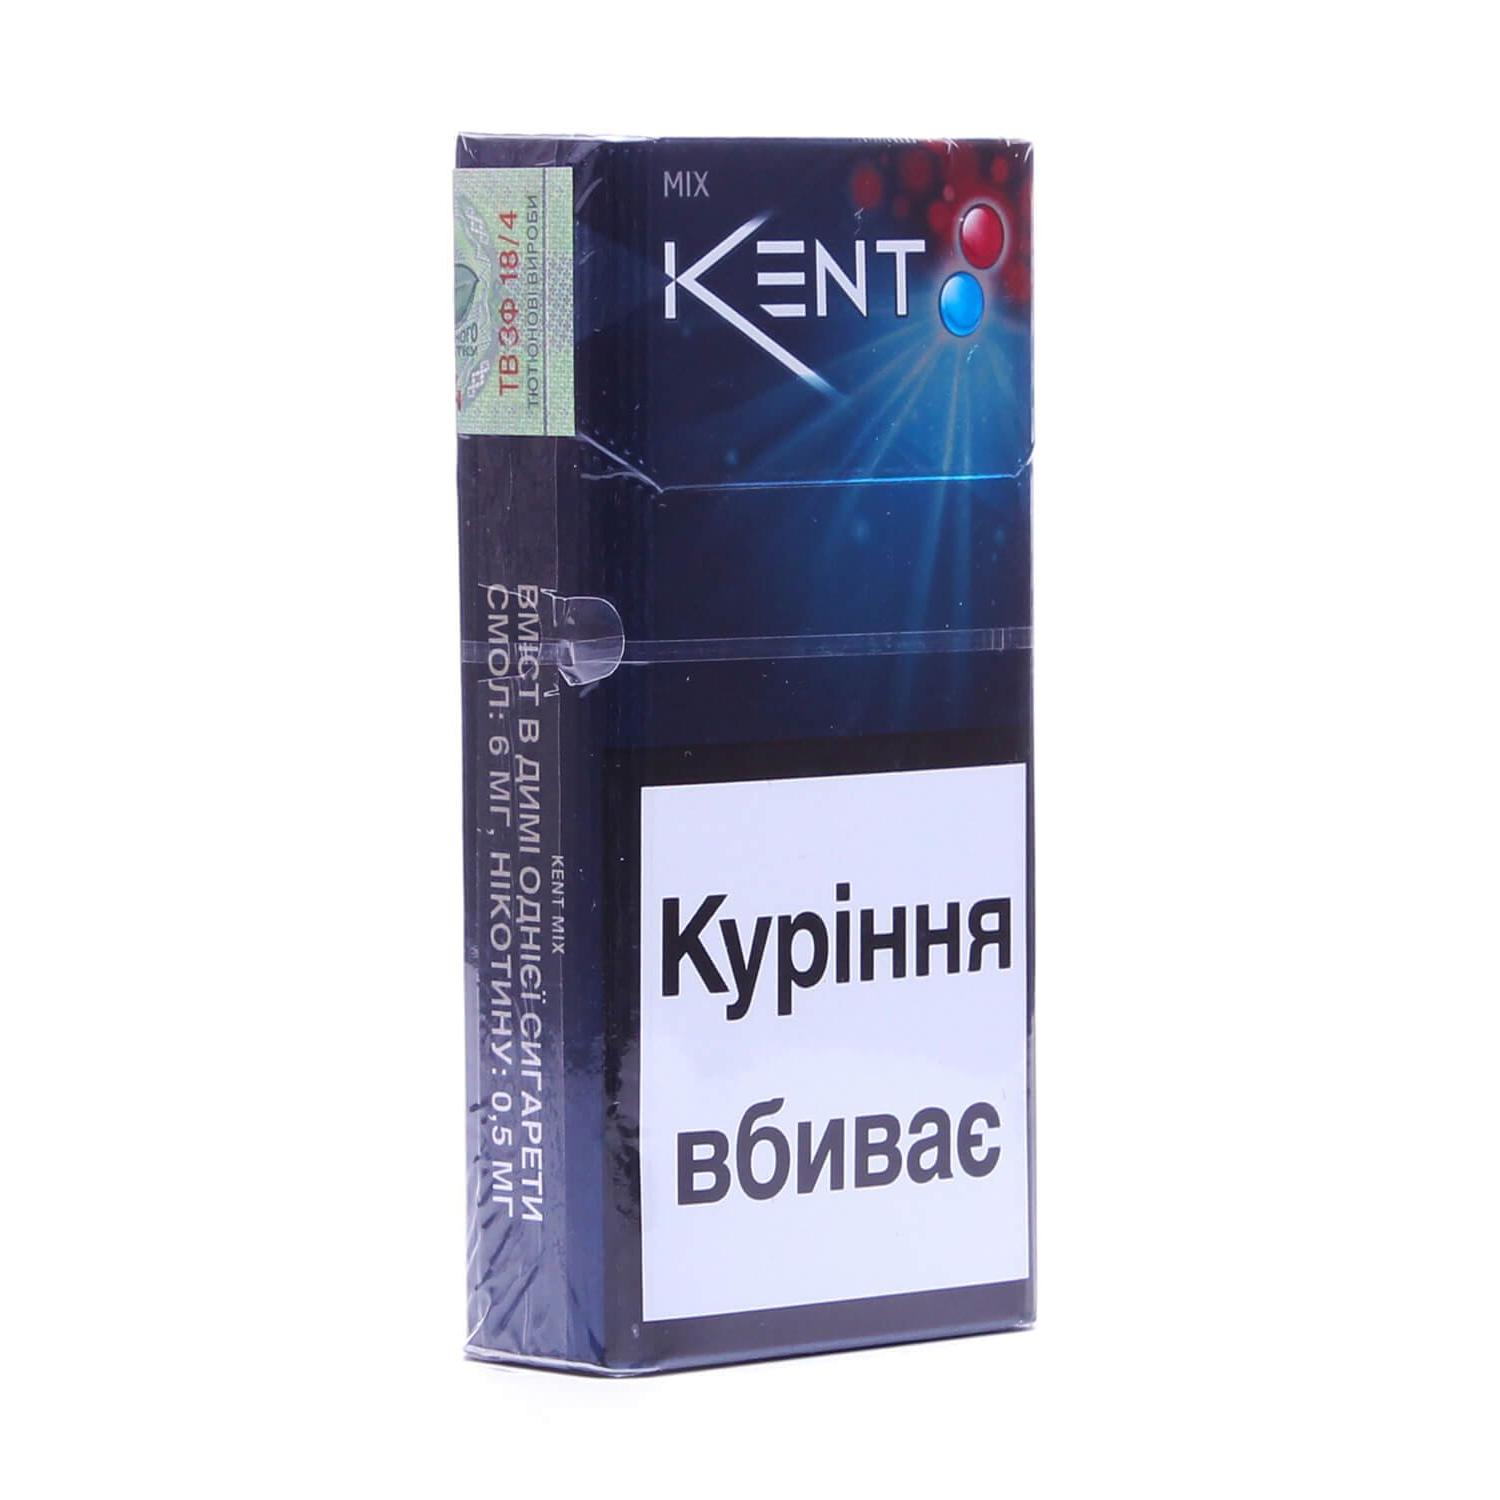 Kent 6 сигареты Mix